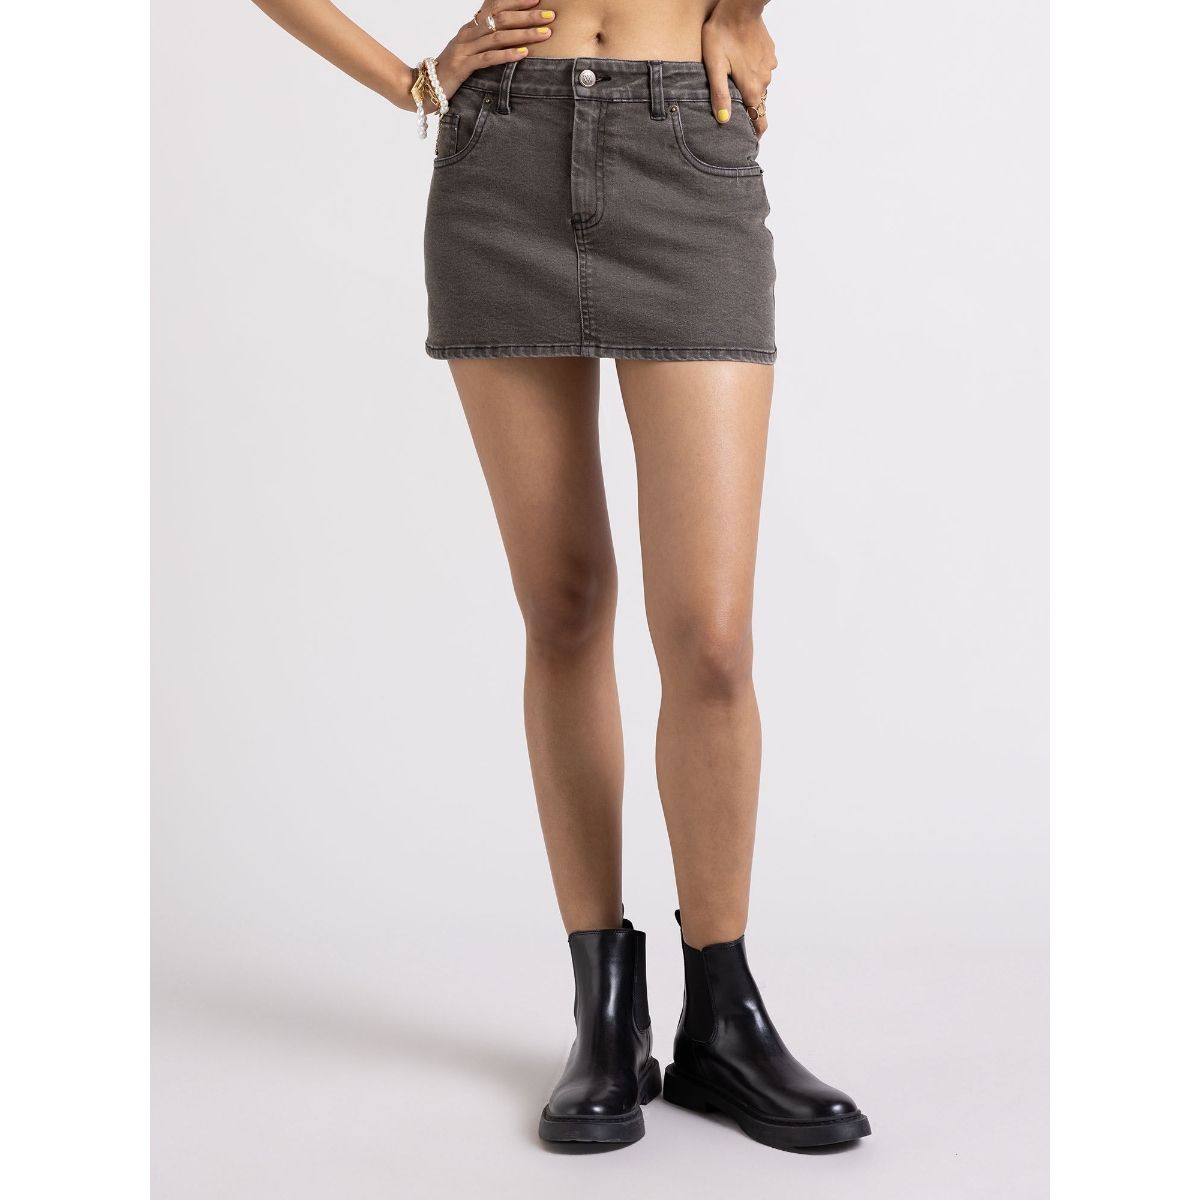 Shorts & Skirts | H&M Denim Short Skirt | Freeup